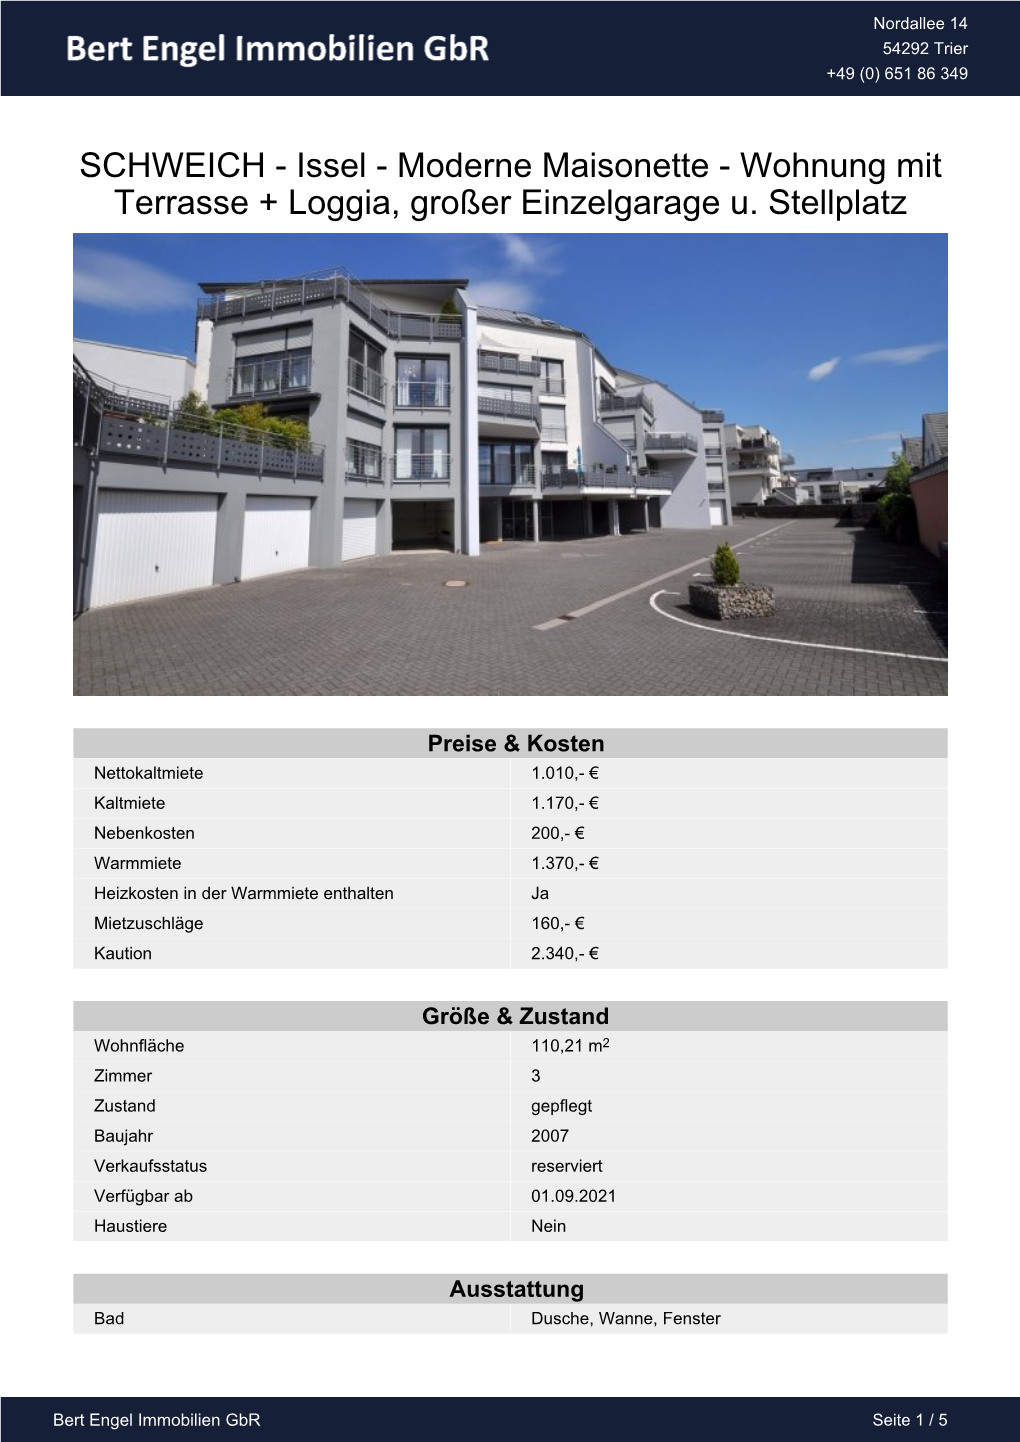 SCHWEICH - Issel - Moderne Maisonette - Wohnung Mit Terrasse + Loggia, Großer Einzelgarage U